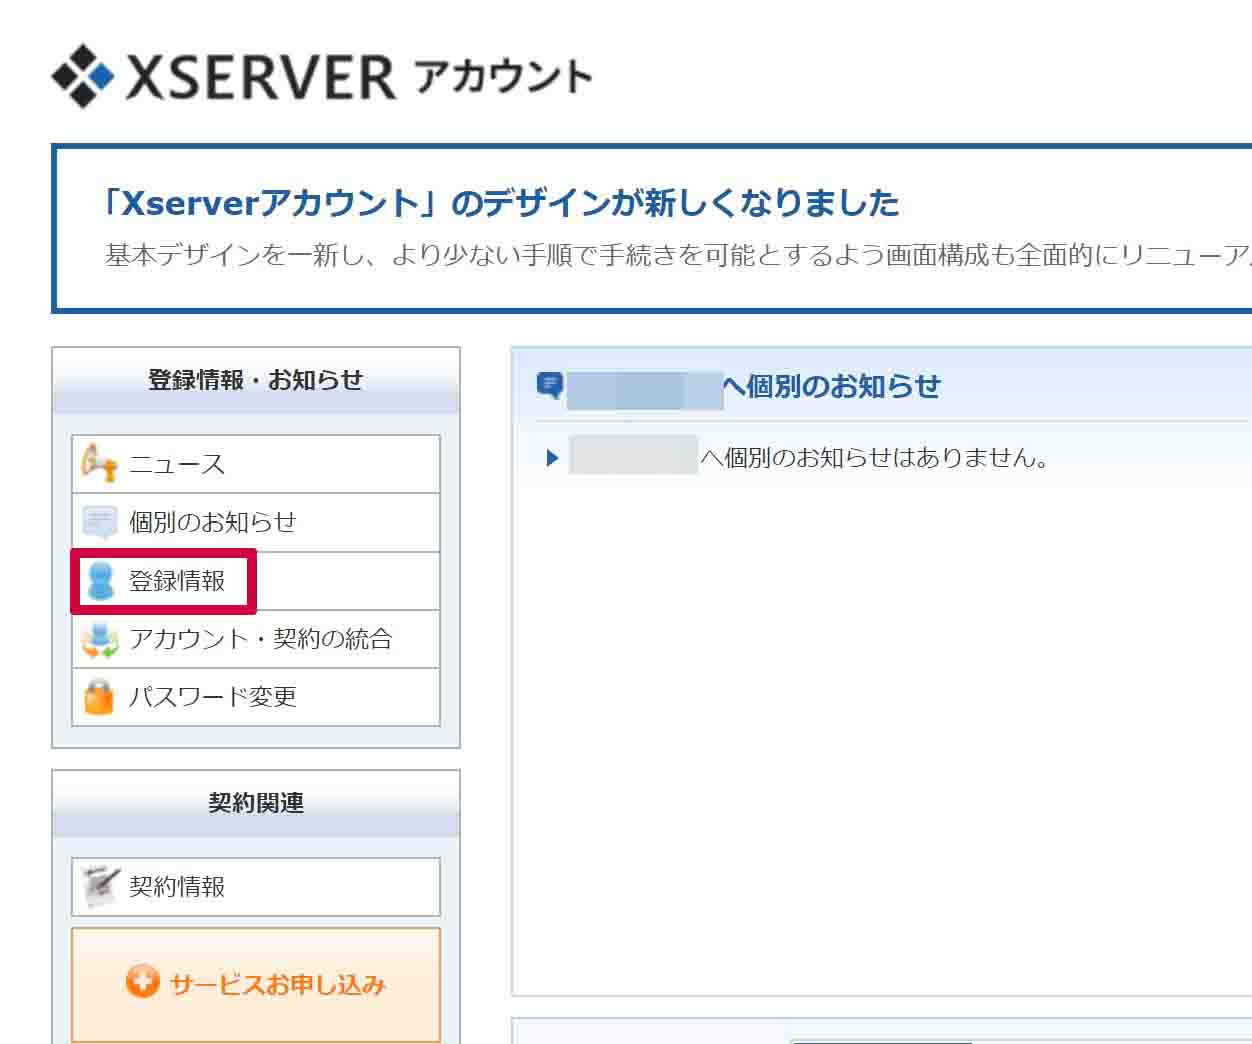 Xserverアカウント内の「登録情報・お知らせ」内にある「登録情報」をクリックして開く